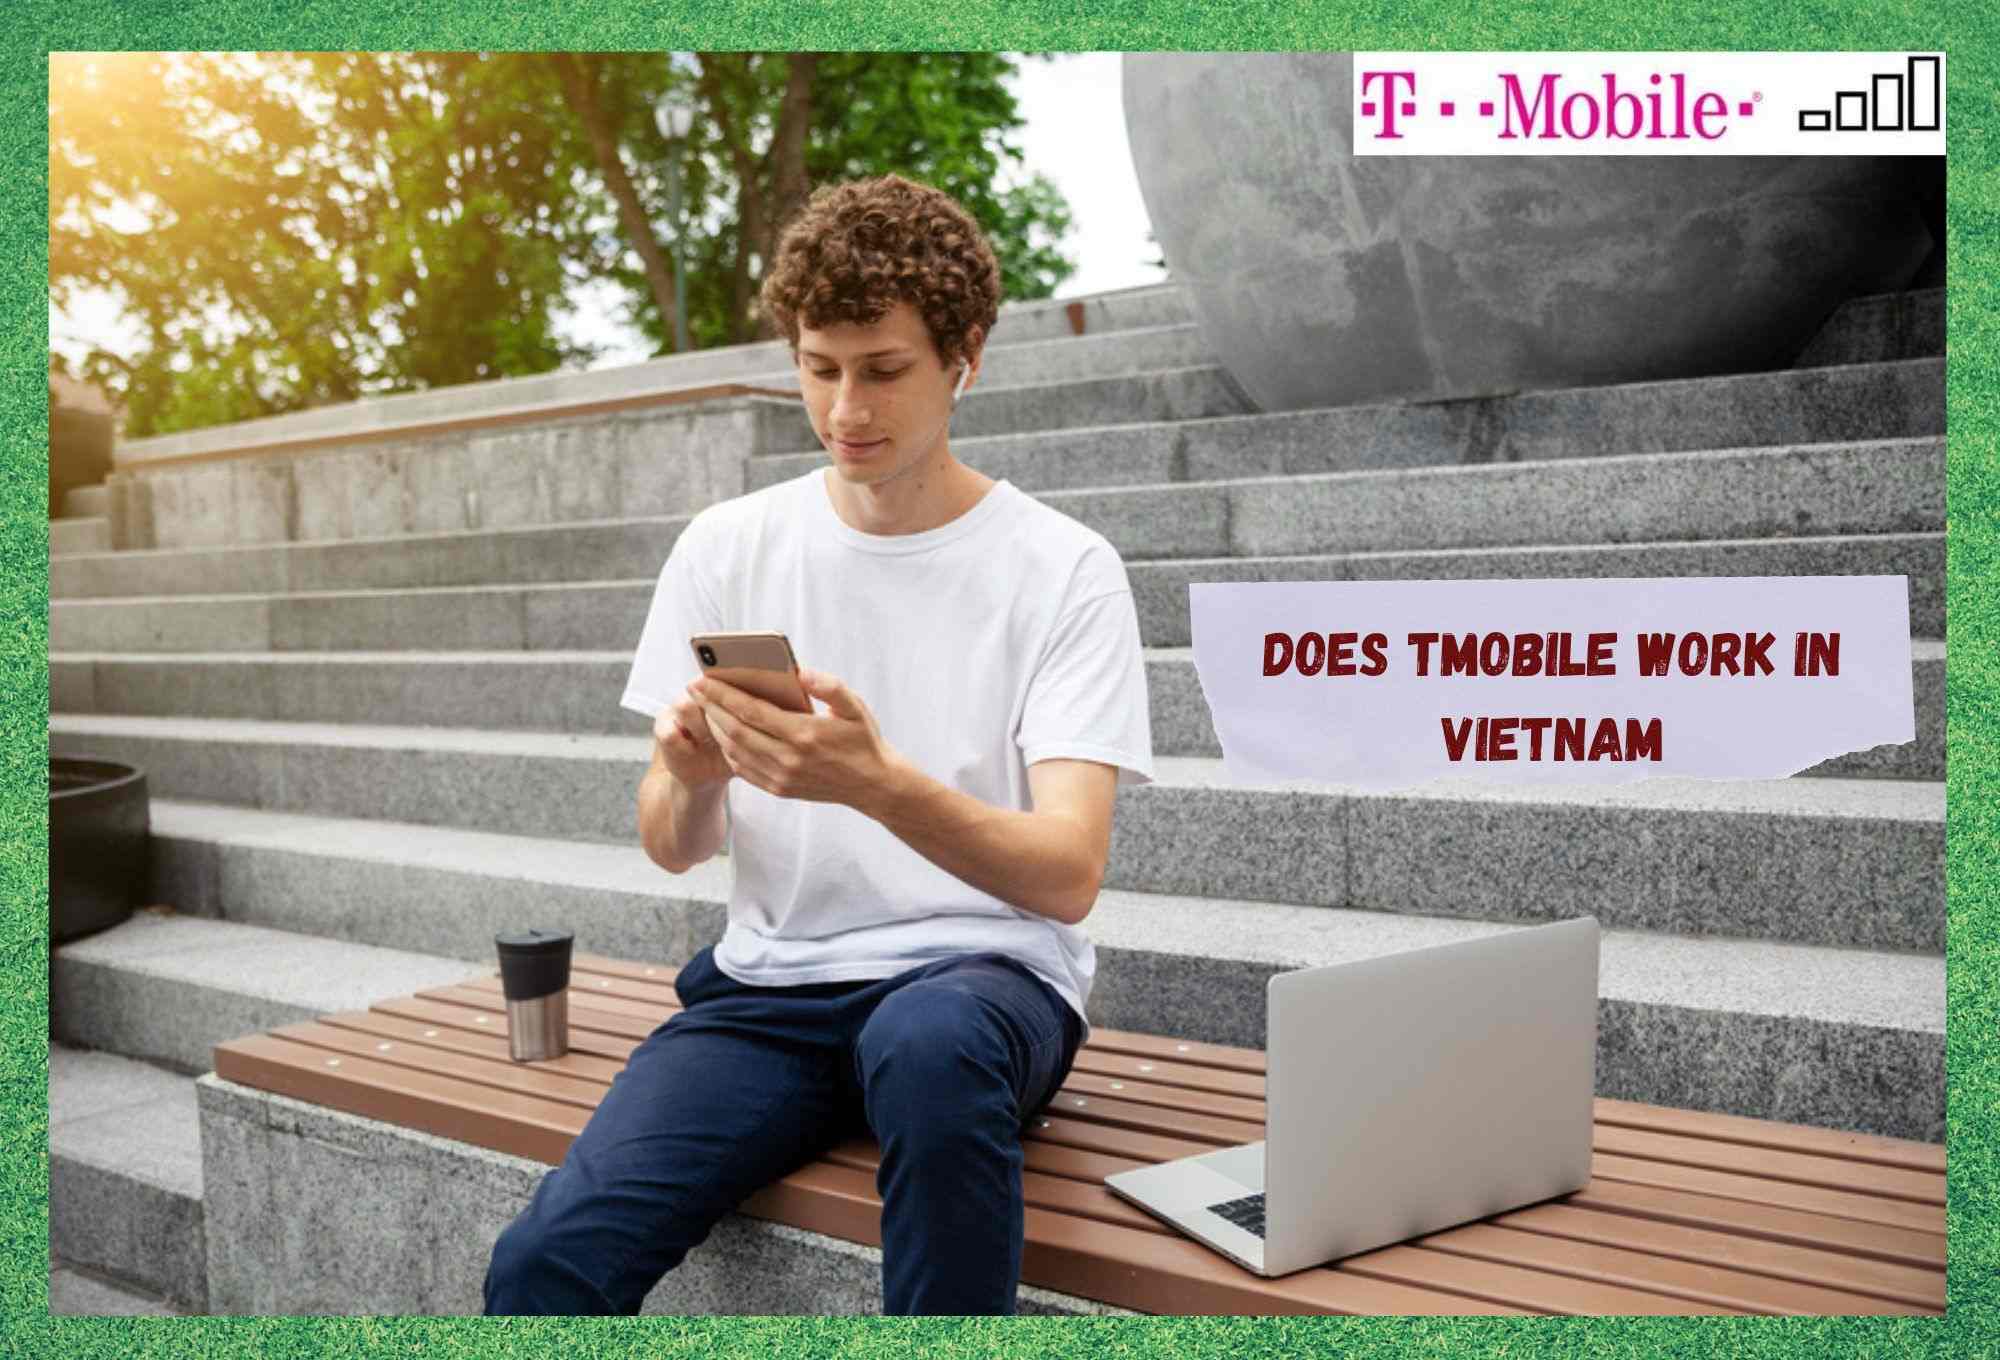 მუშაობს თუ არა T-Mobile ვიეტნამში? (უპასუხა)